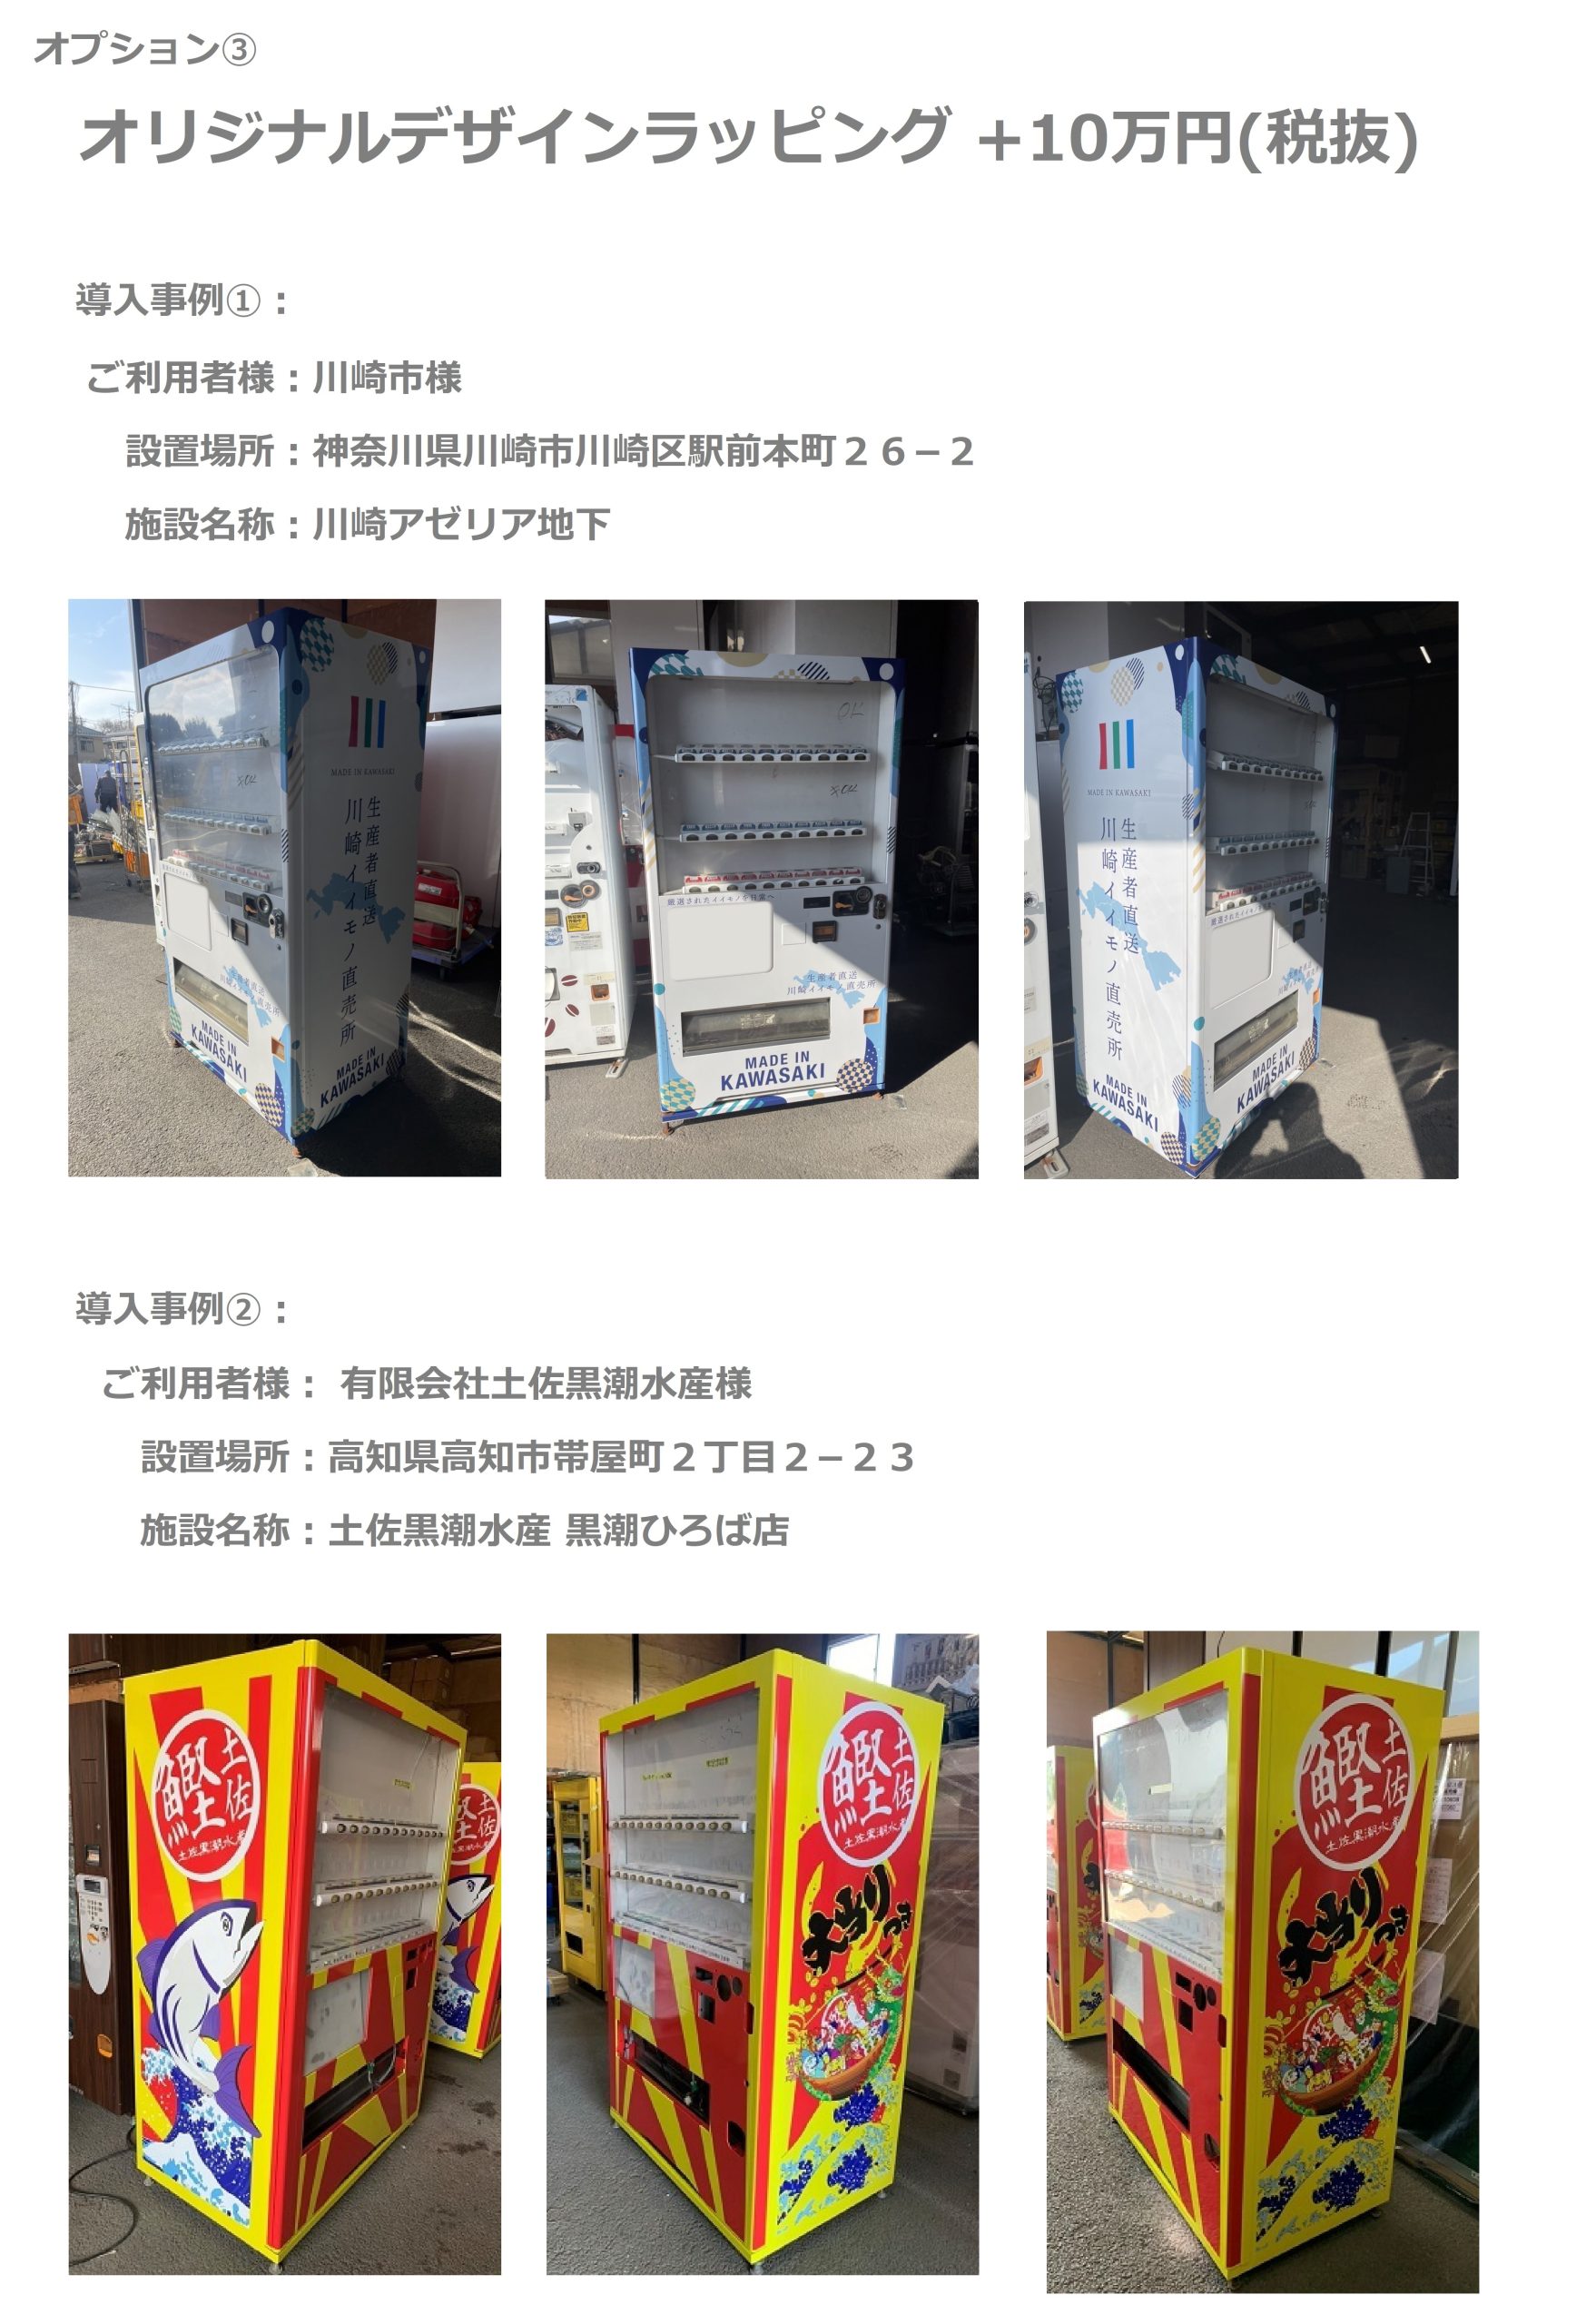 36セレクション 飲料自動販売機 - UMs合同会社 各種自動販売機取り扱い